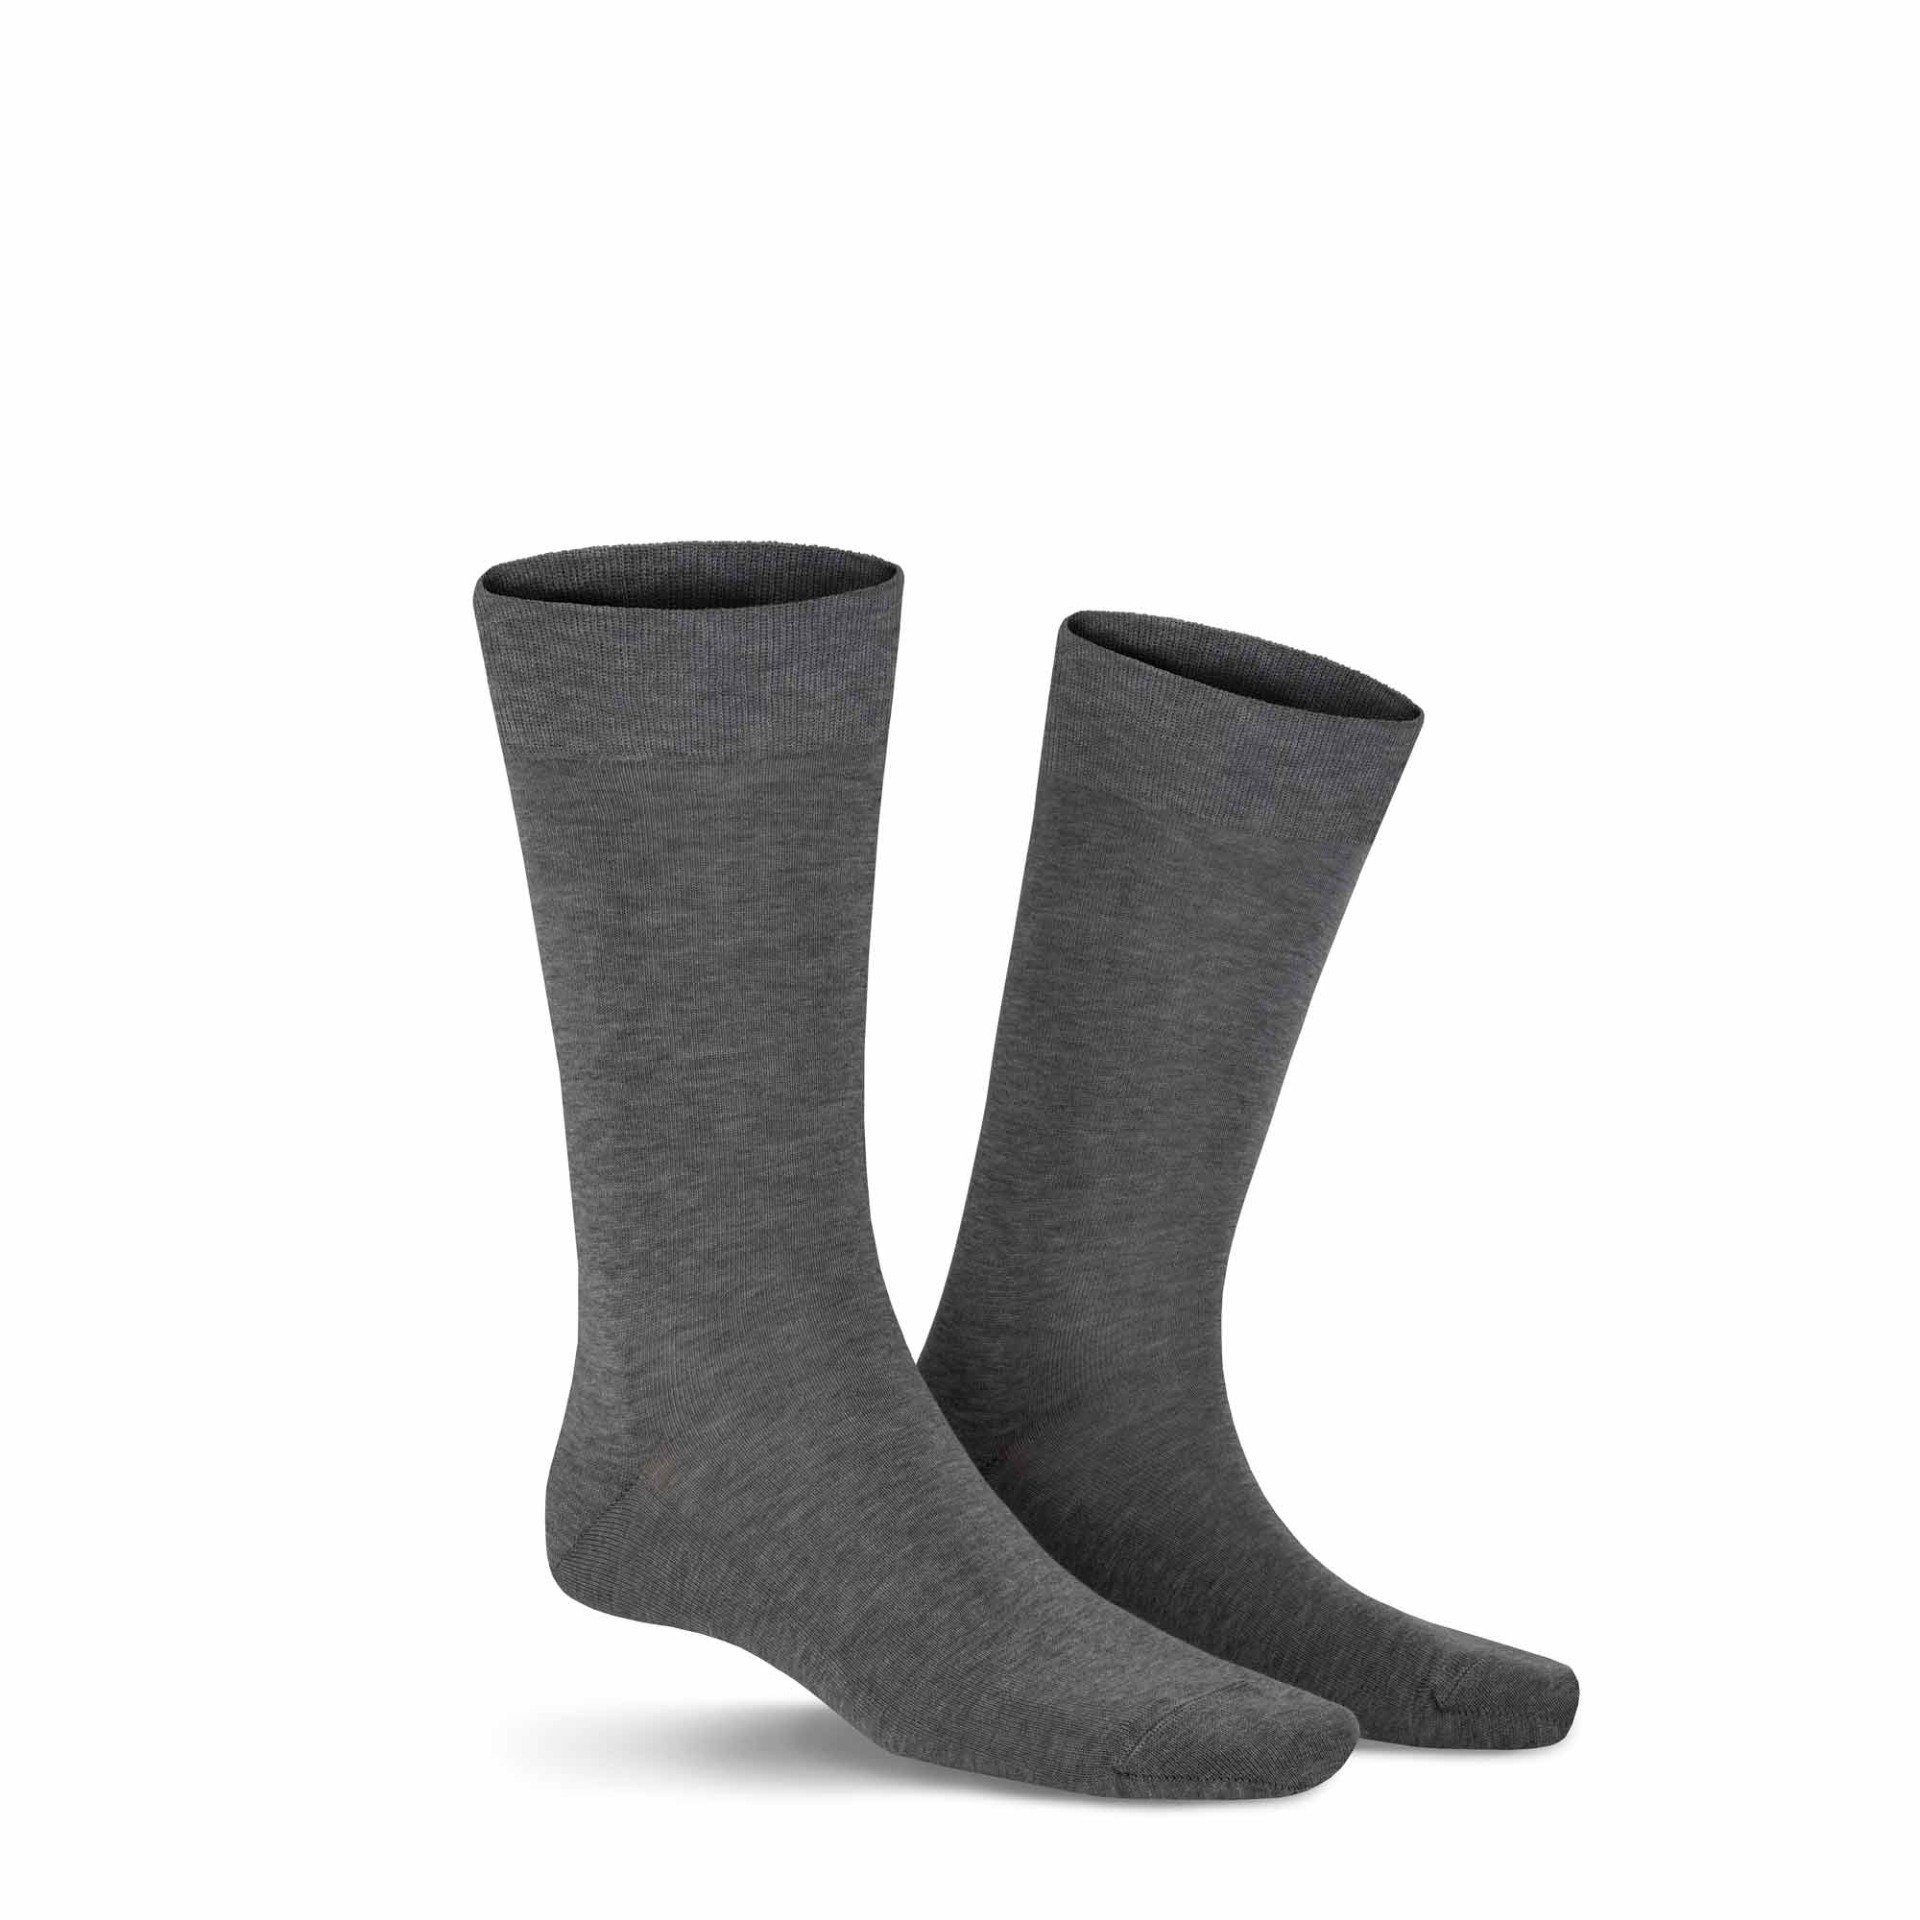 [Qualitätsgarantie und kostenloser Versand vorausgesetzt] KUNERT Basicsocken 8110 (1-Paar) Passform Herren CLARK Feinste Baumwoll-Socken Silver-mel. eine für perfekte